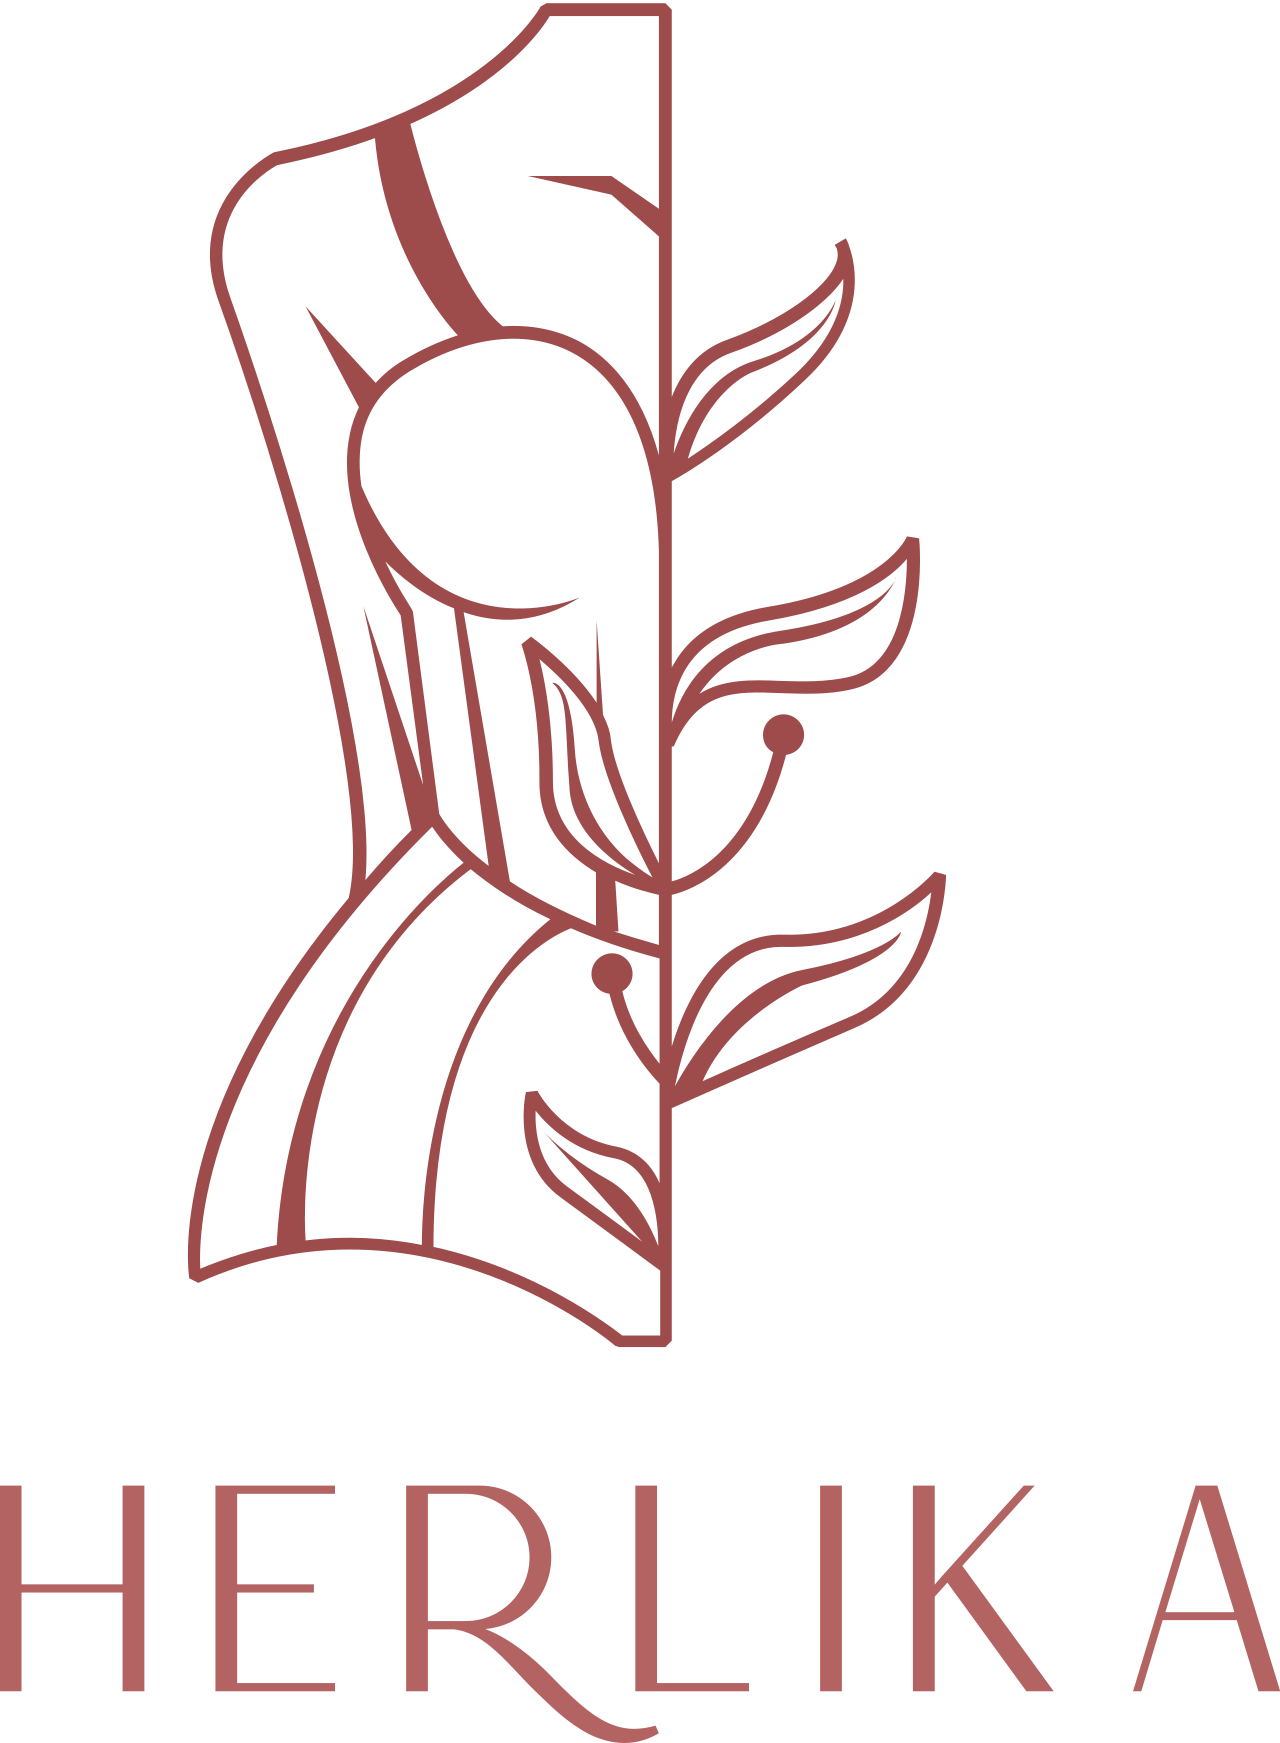 Herlika's logo